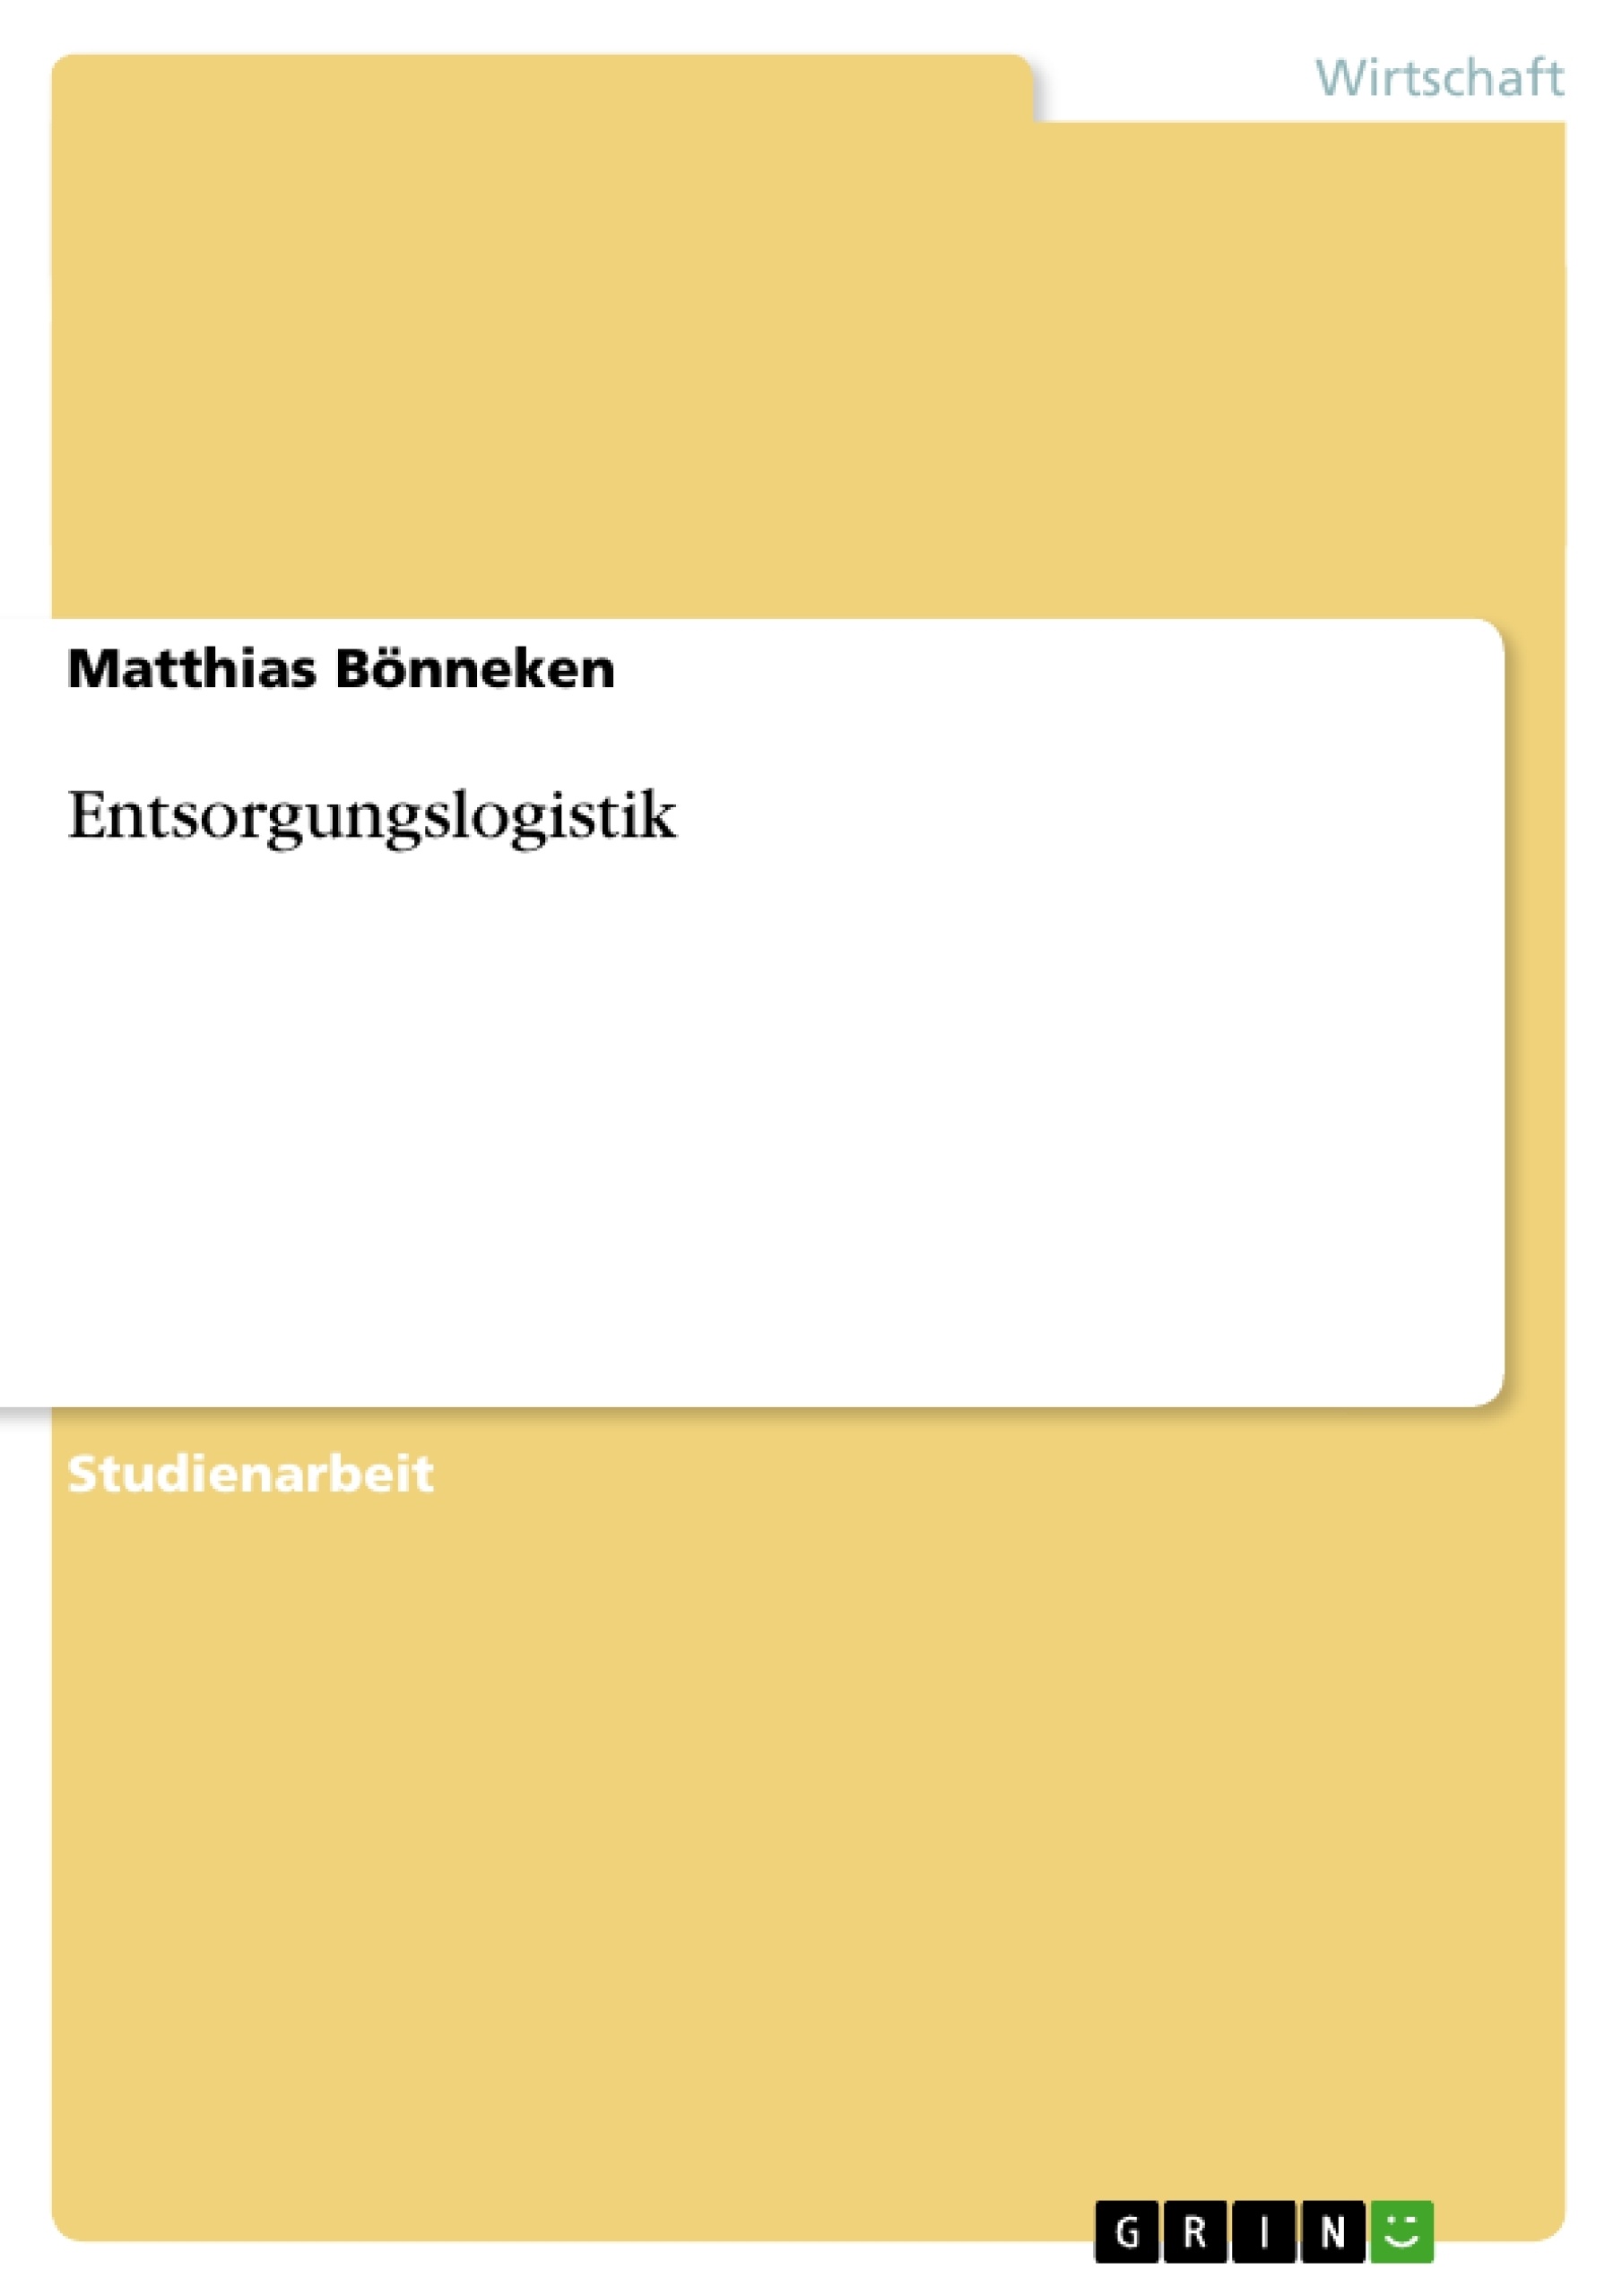 Título: Entsorgungslogistik